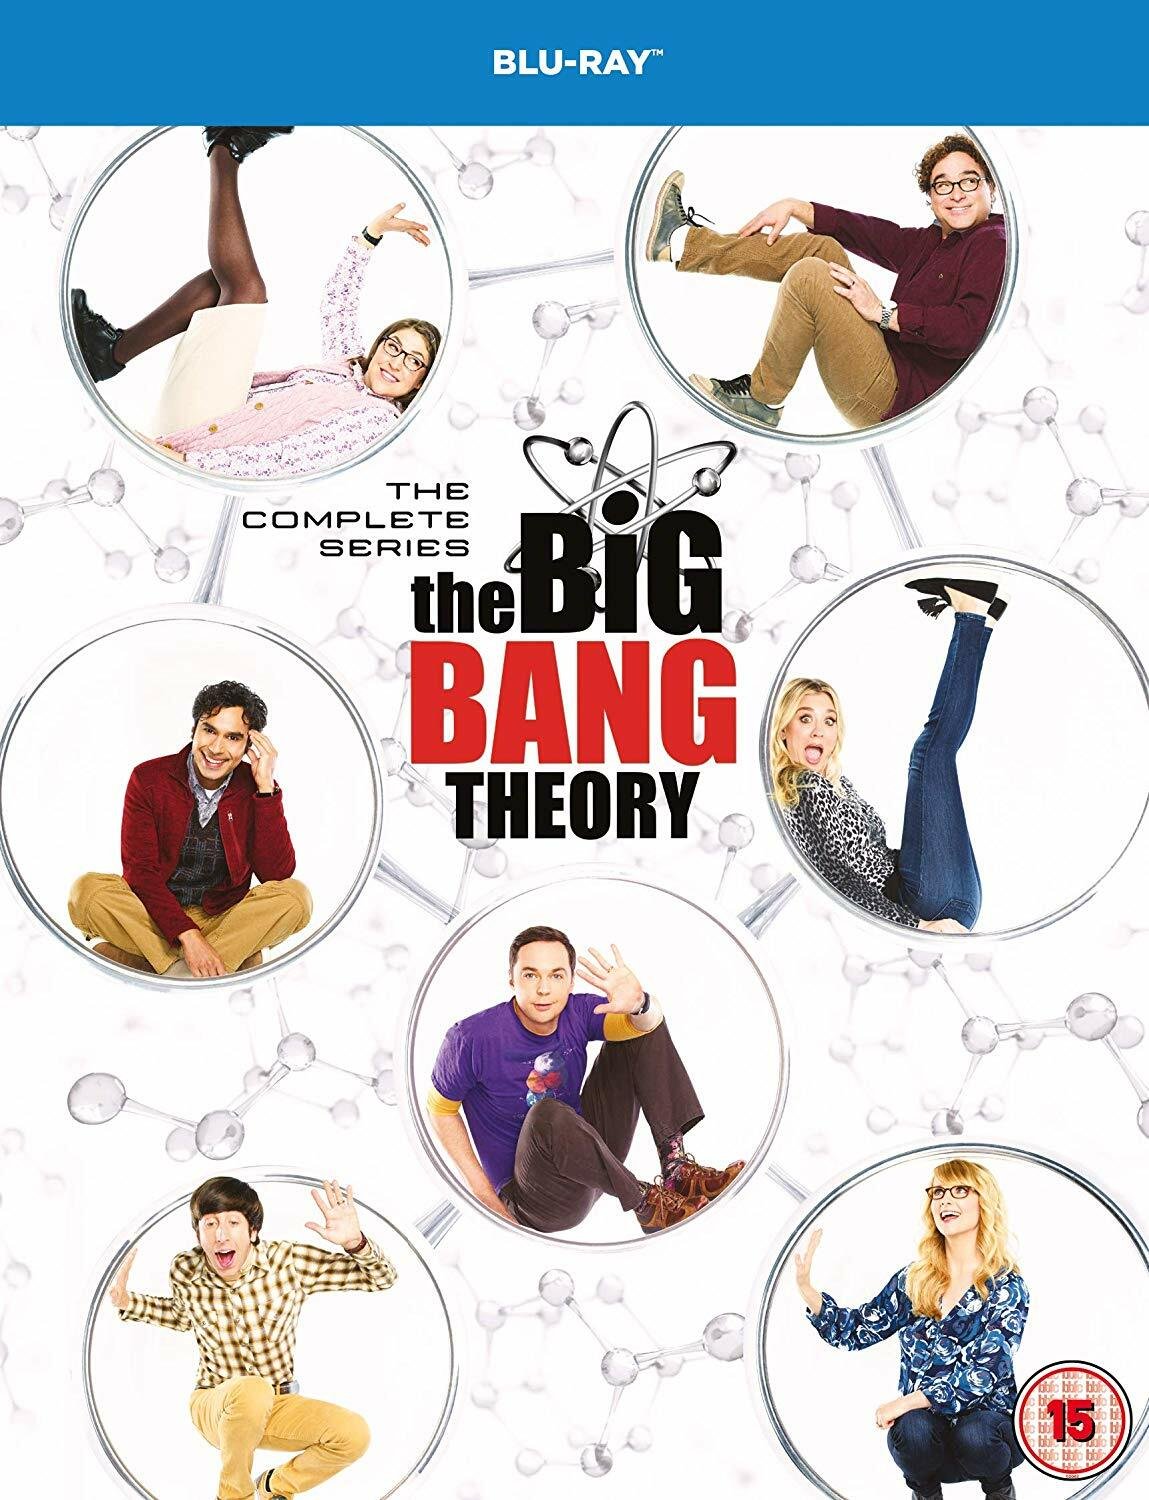 Il cast nella copertina del cofanetto Blu-ray di The Big Bang Theory